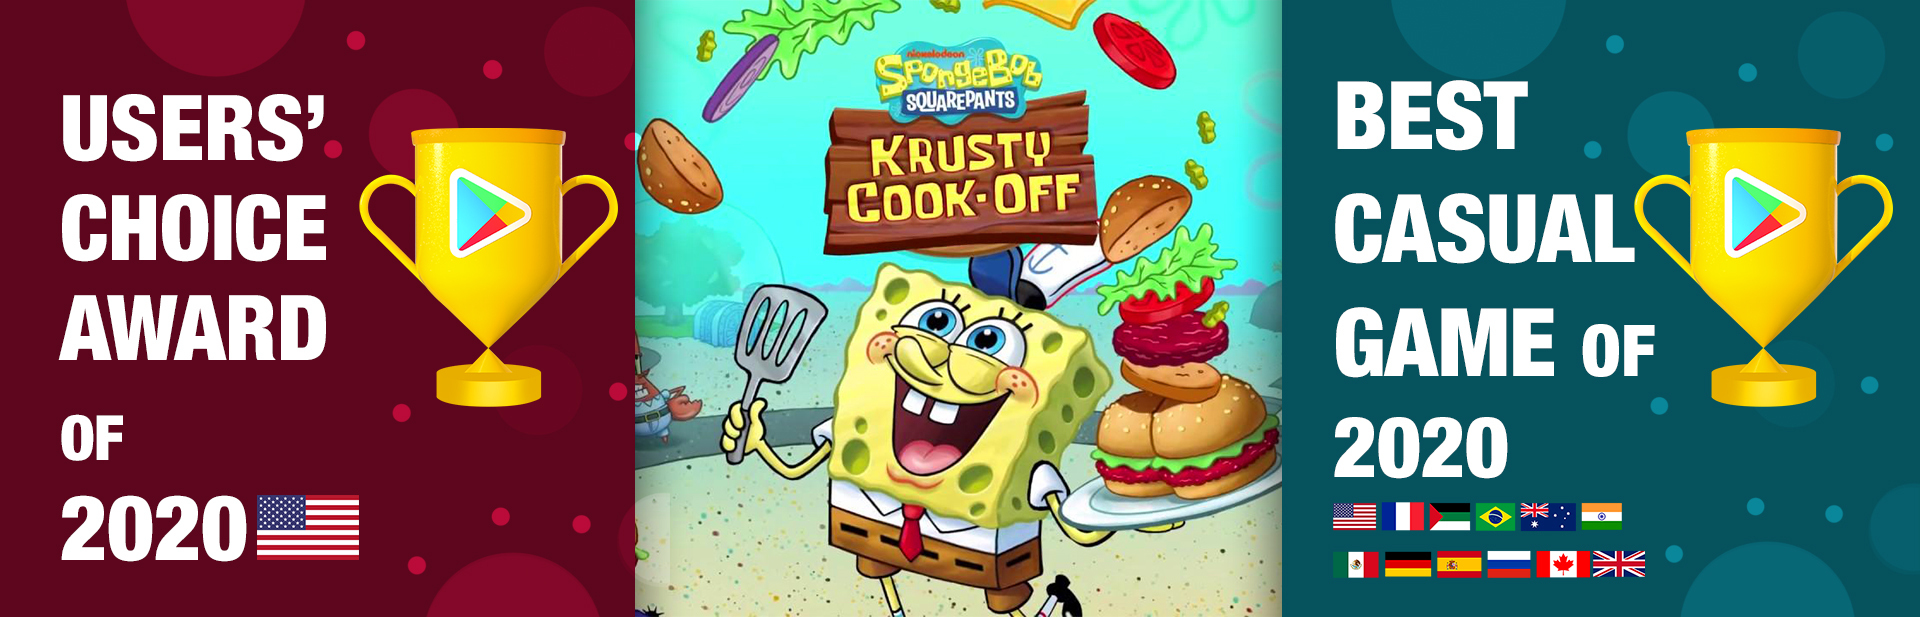 Krusty Cook Off Wins worldwide!